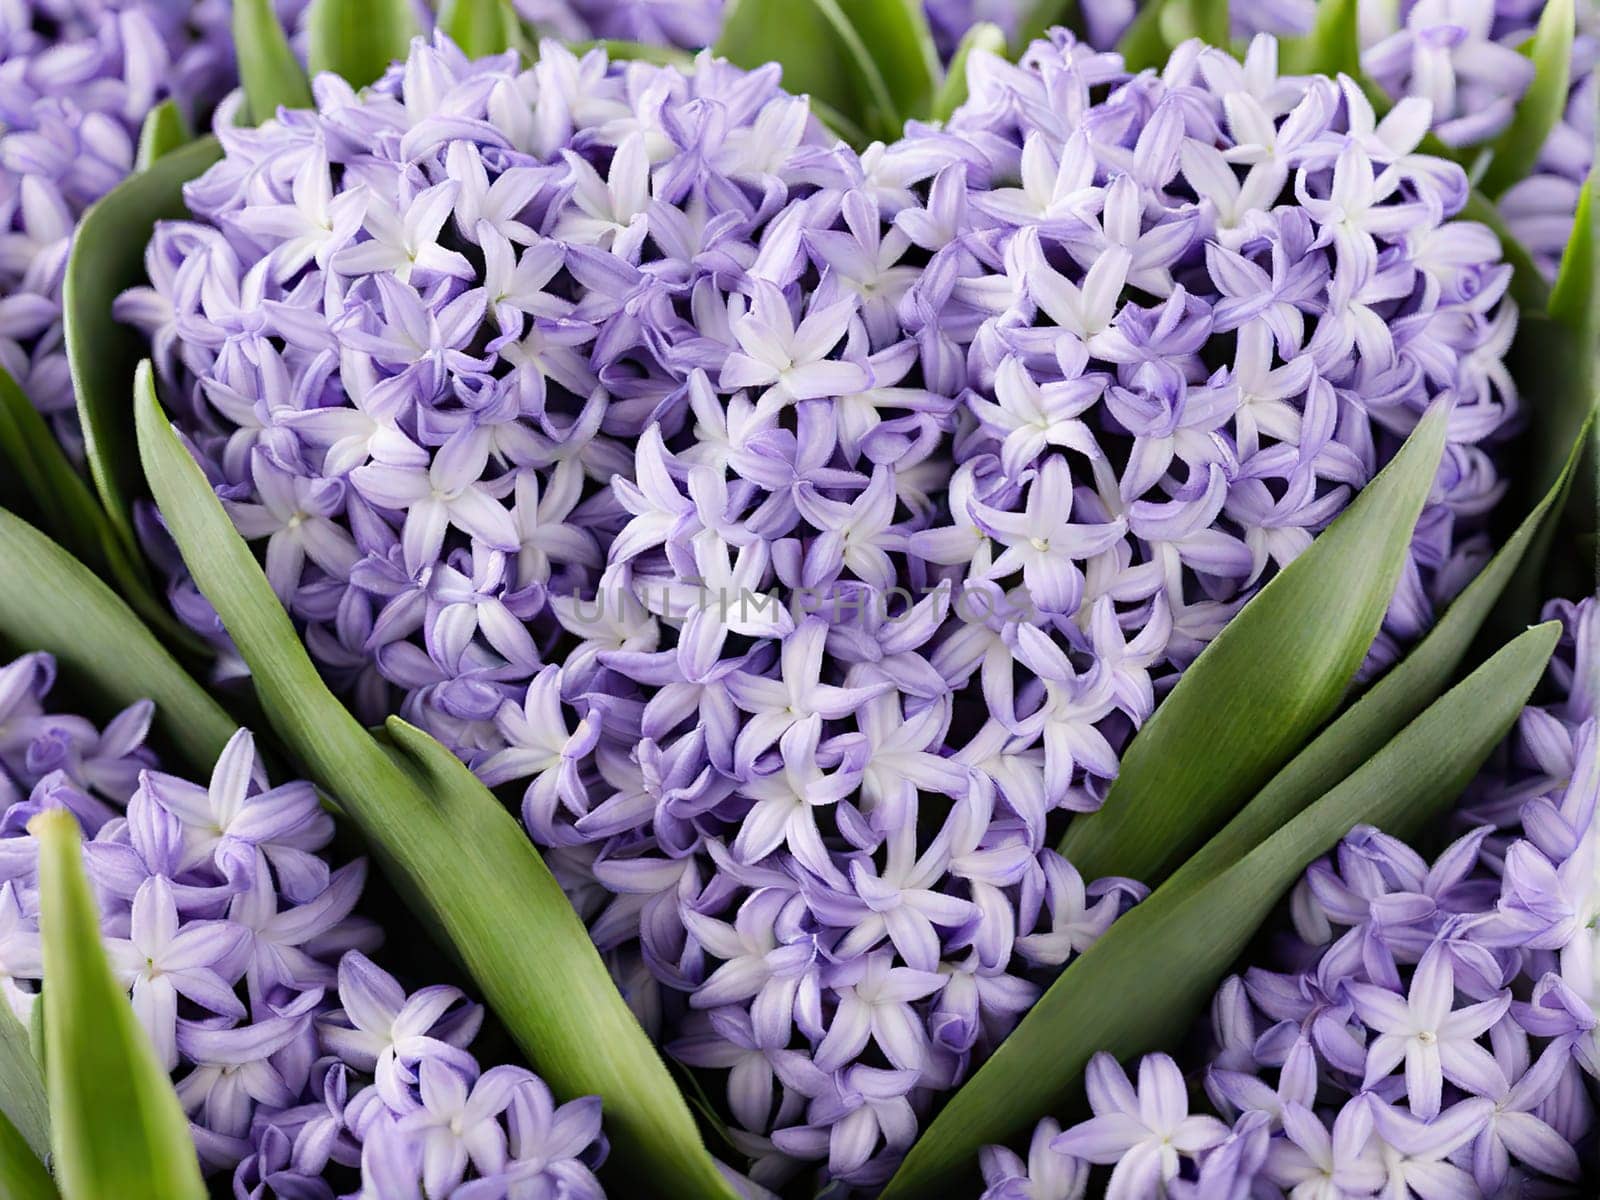 Happy International Women Day, hyacinth over background heartfelt by EkaterinaPereslavtseva